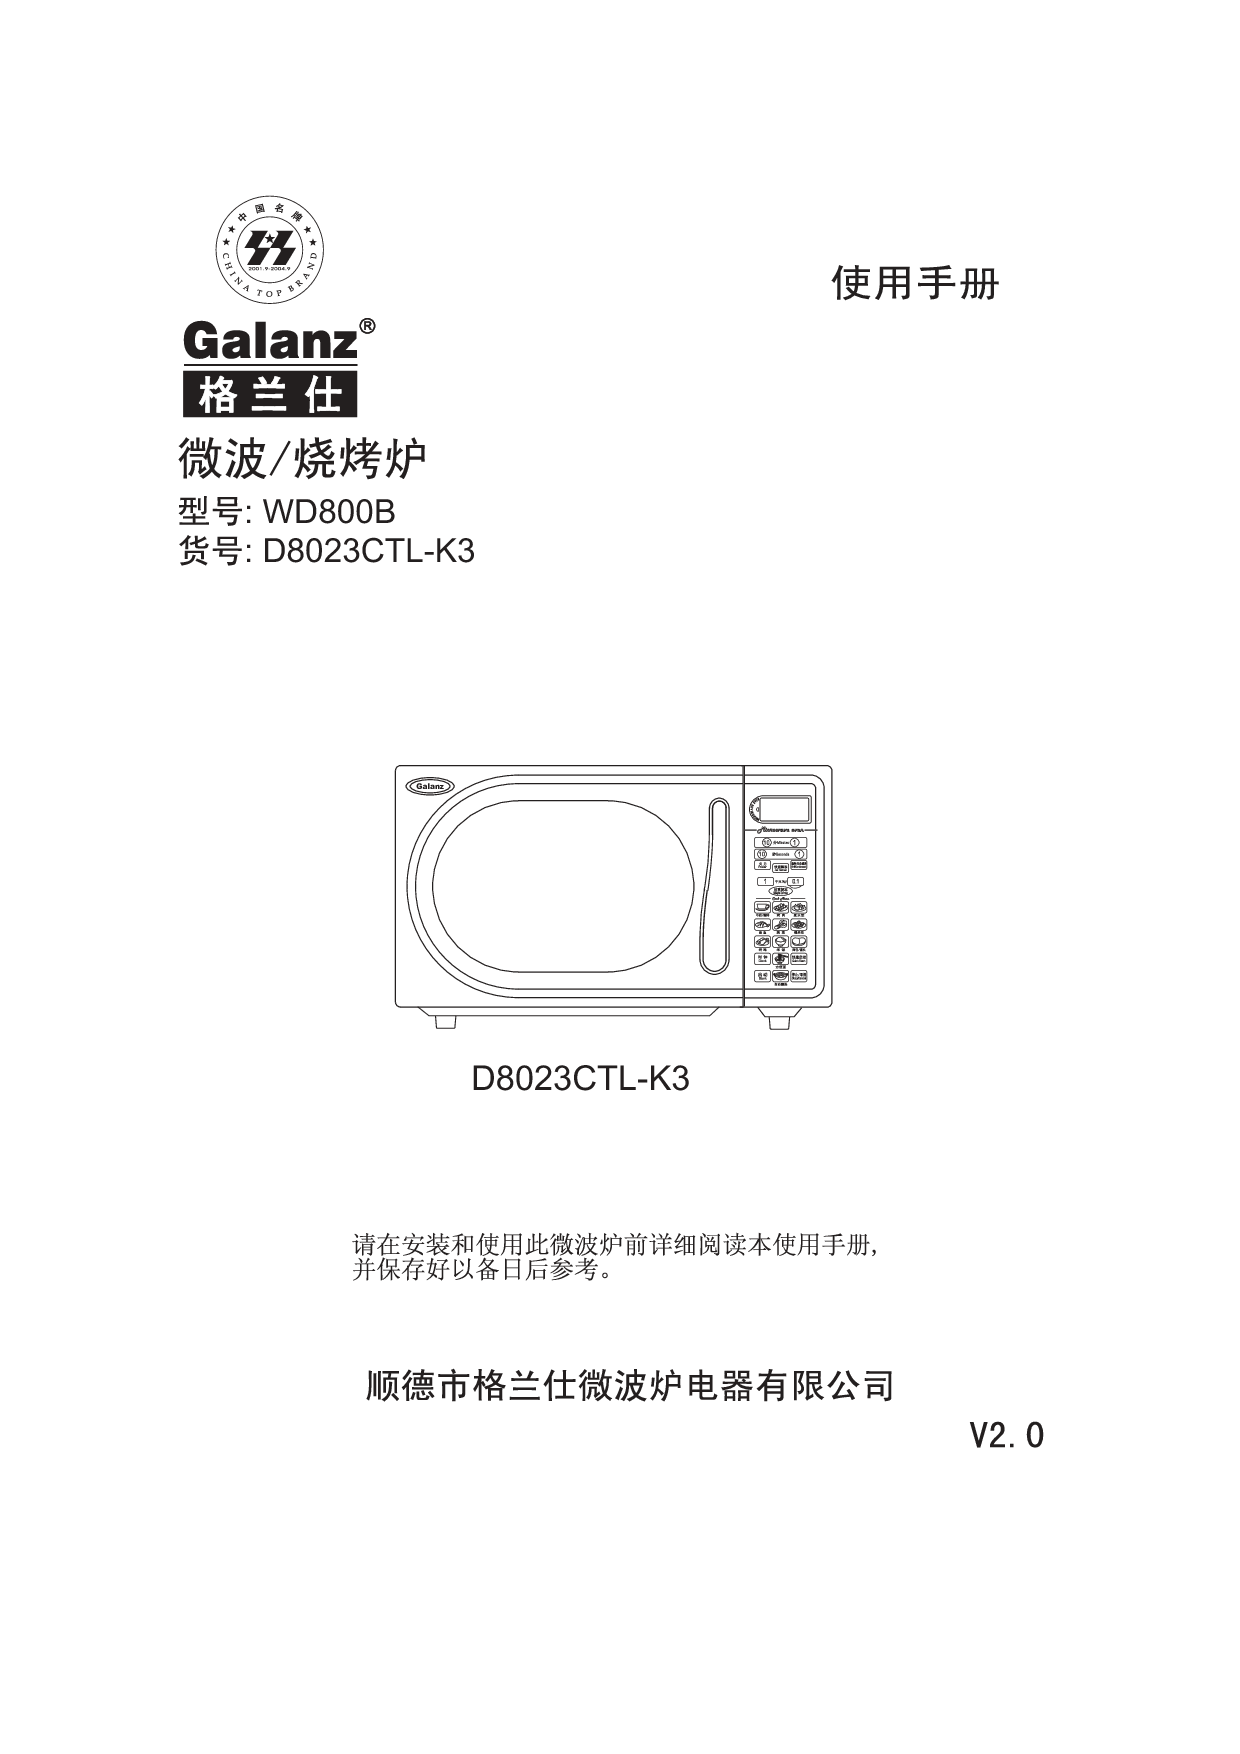 格兰仕 Galanz D8023CTL-K3 使用手册 封面